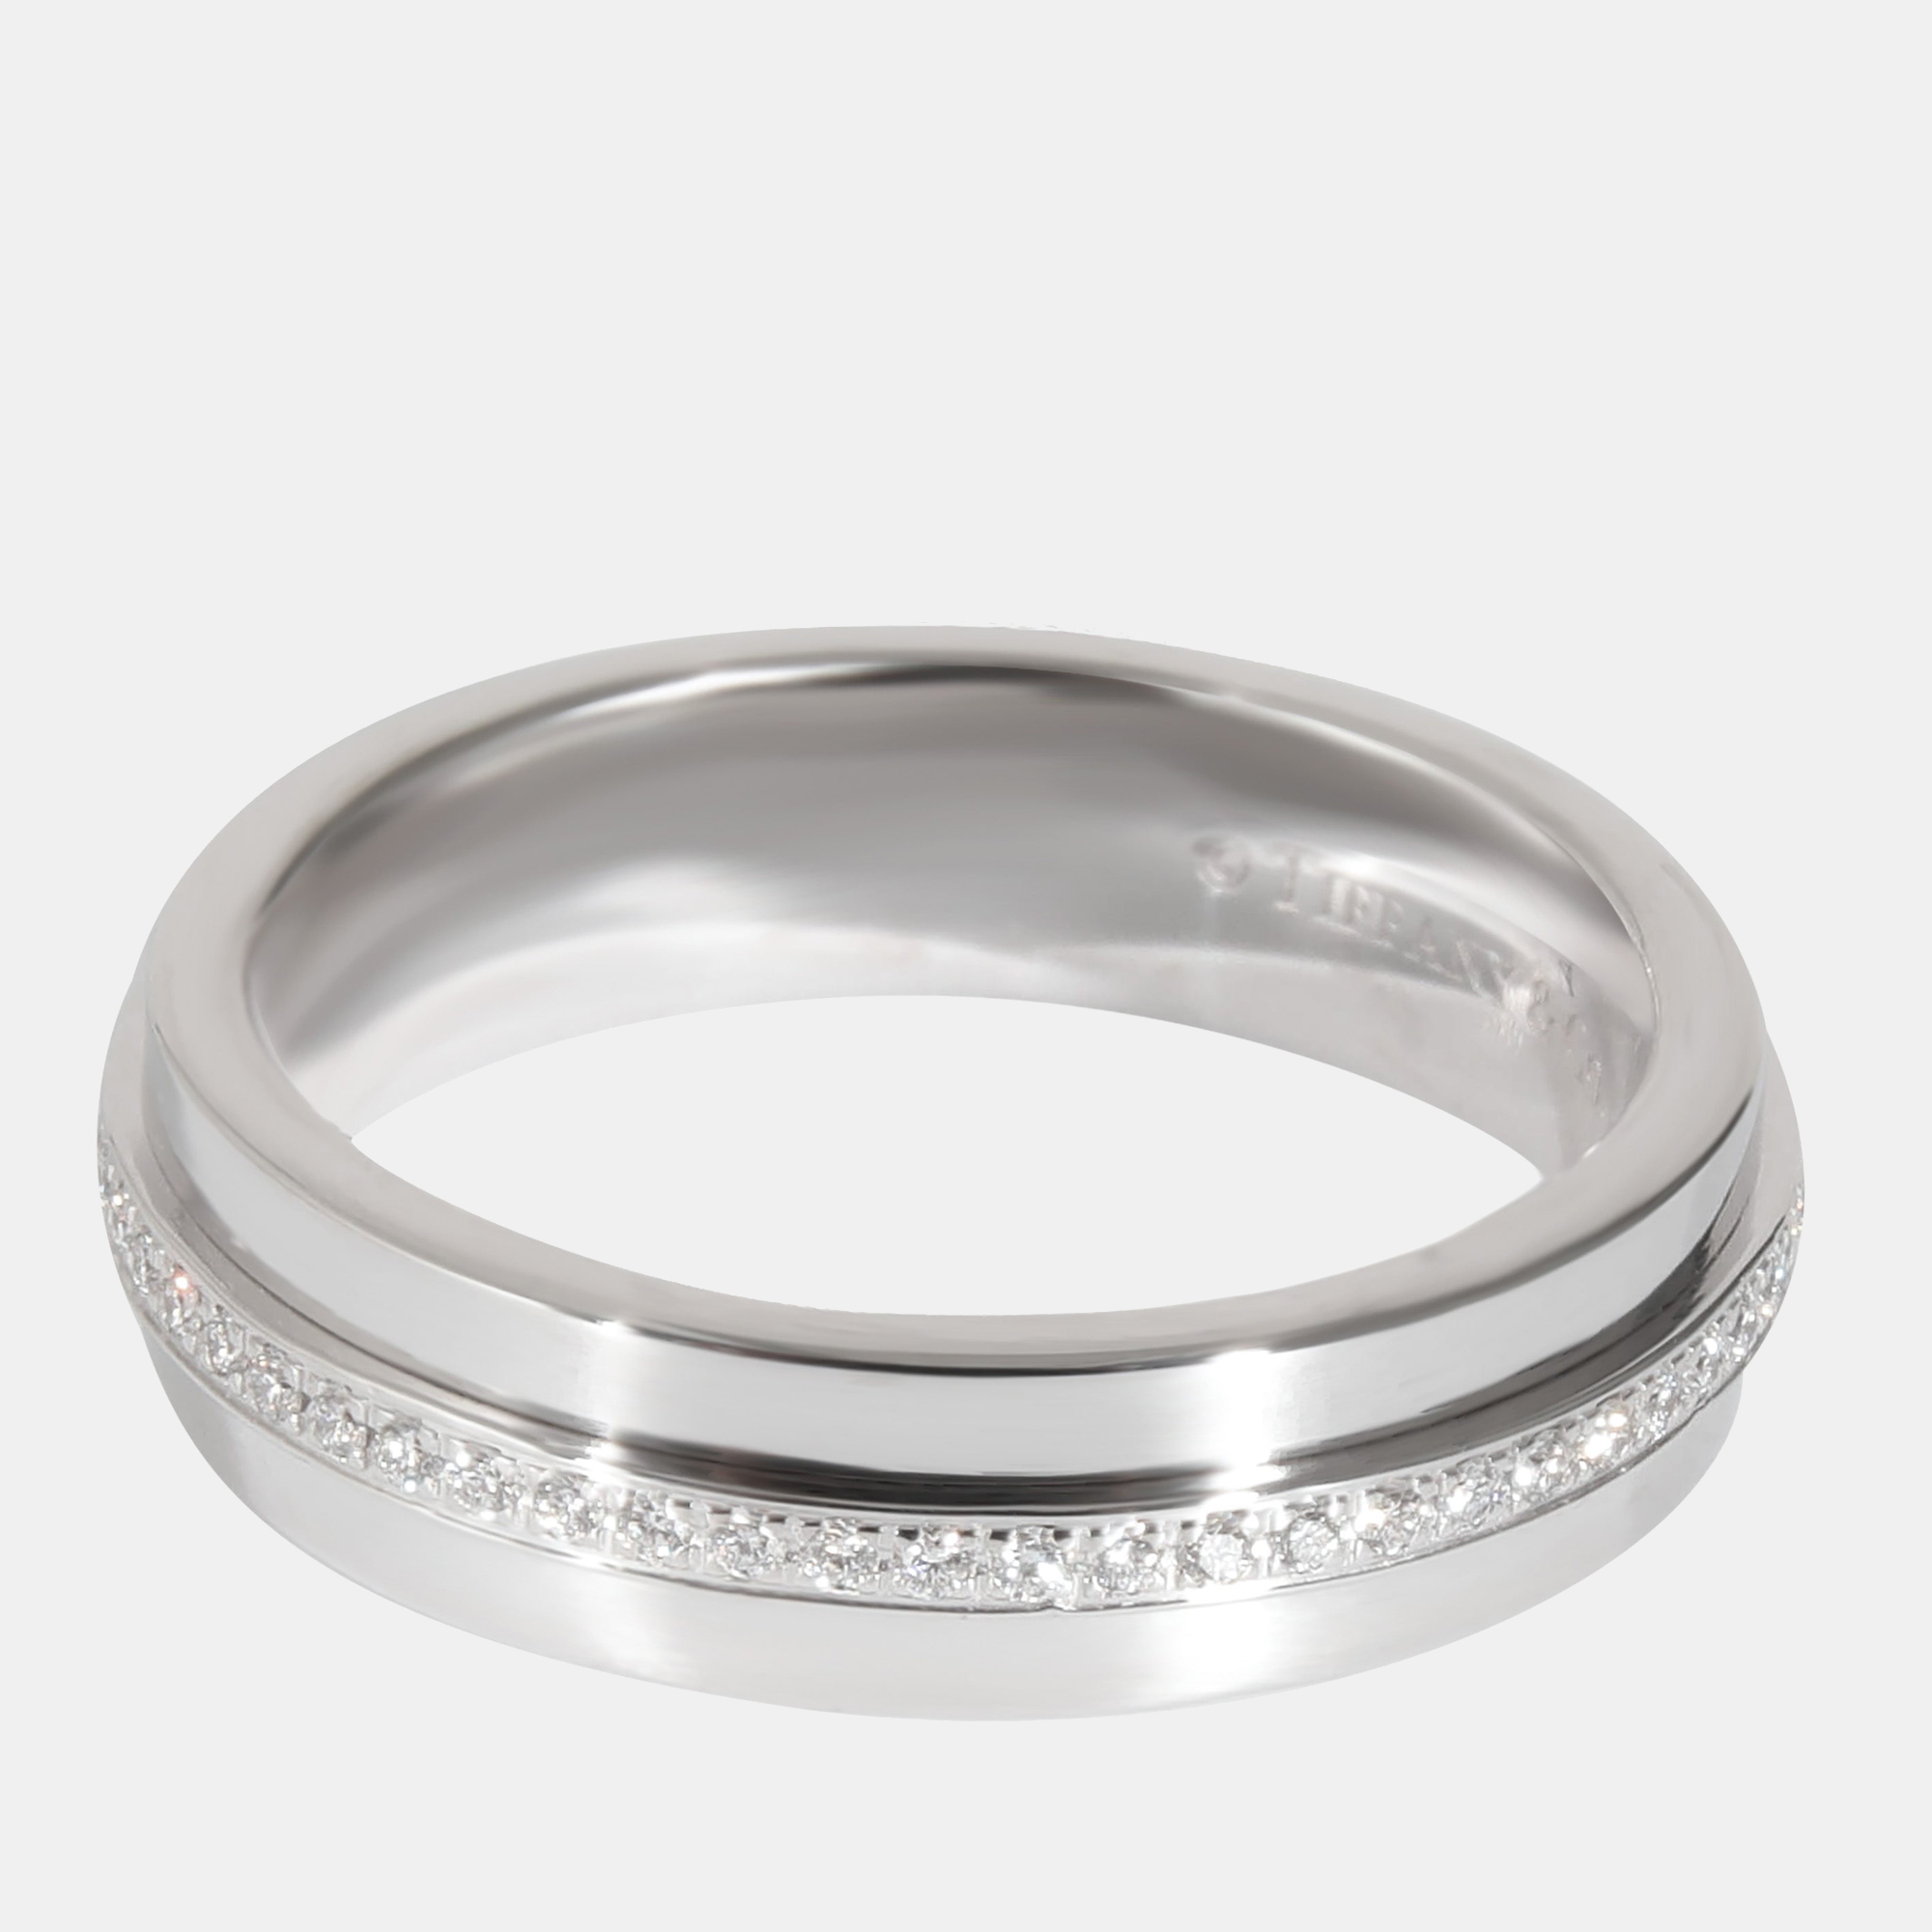 Tiffany & Co. Tiffany T Narrow Diamond Ring In 18k White Gold 0.13 CTW Ring EU 47